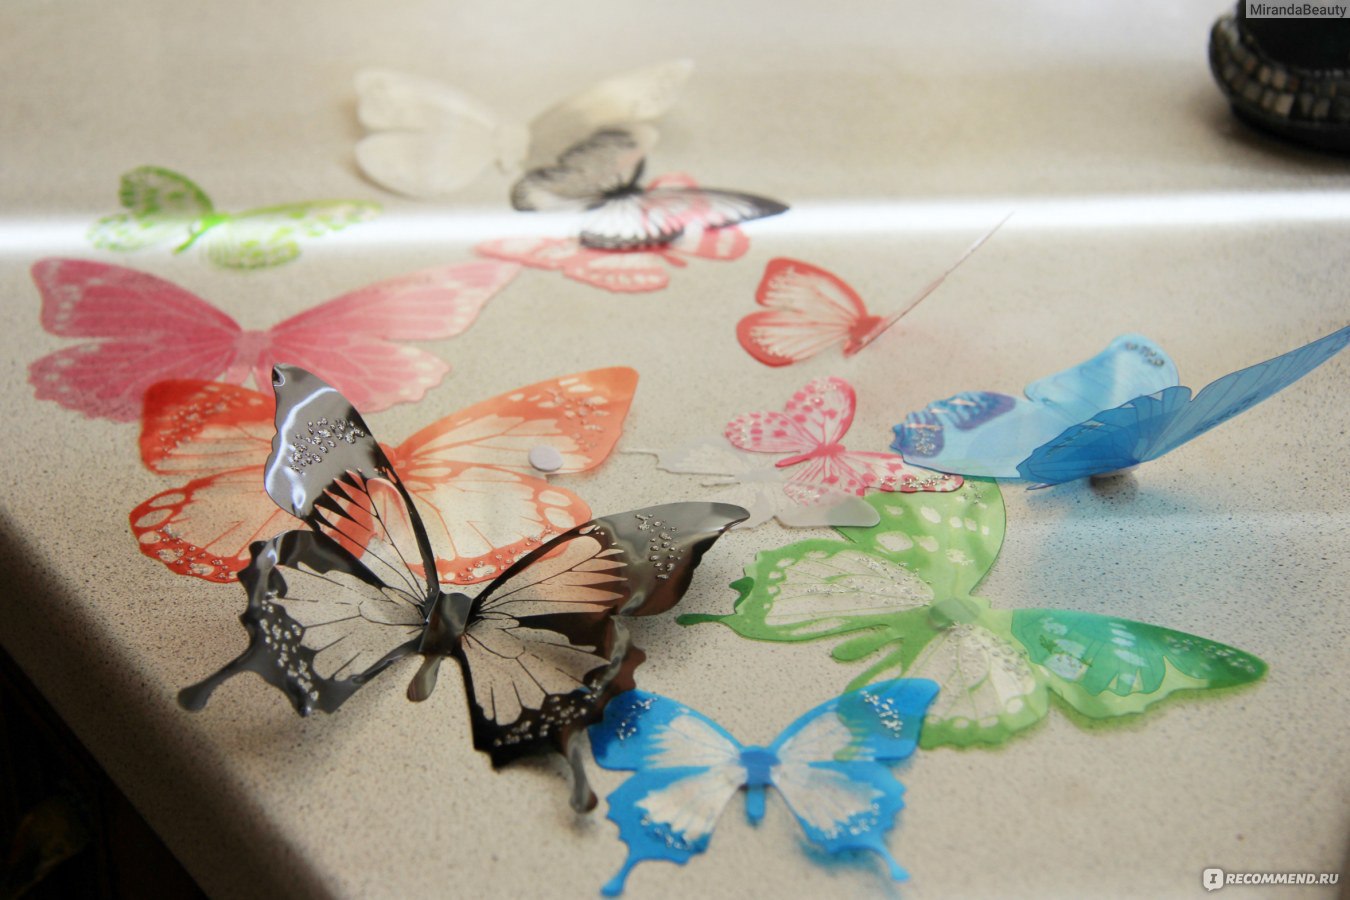 бумажные бабочки на стене своими руками фото 4 | Поделки, Бумажные бабочки, Трафареты